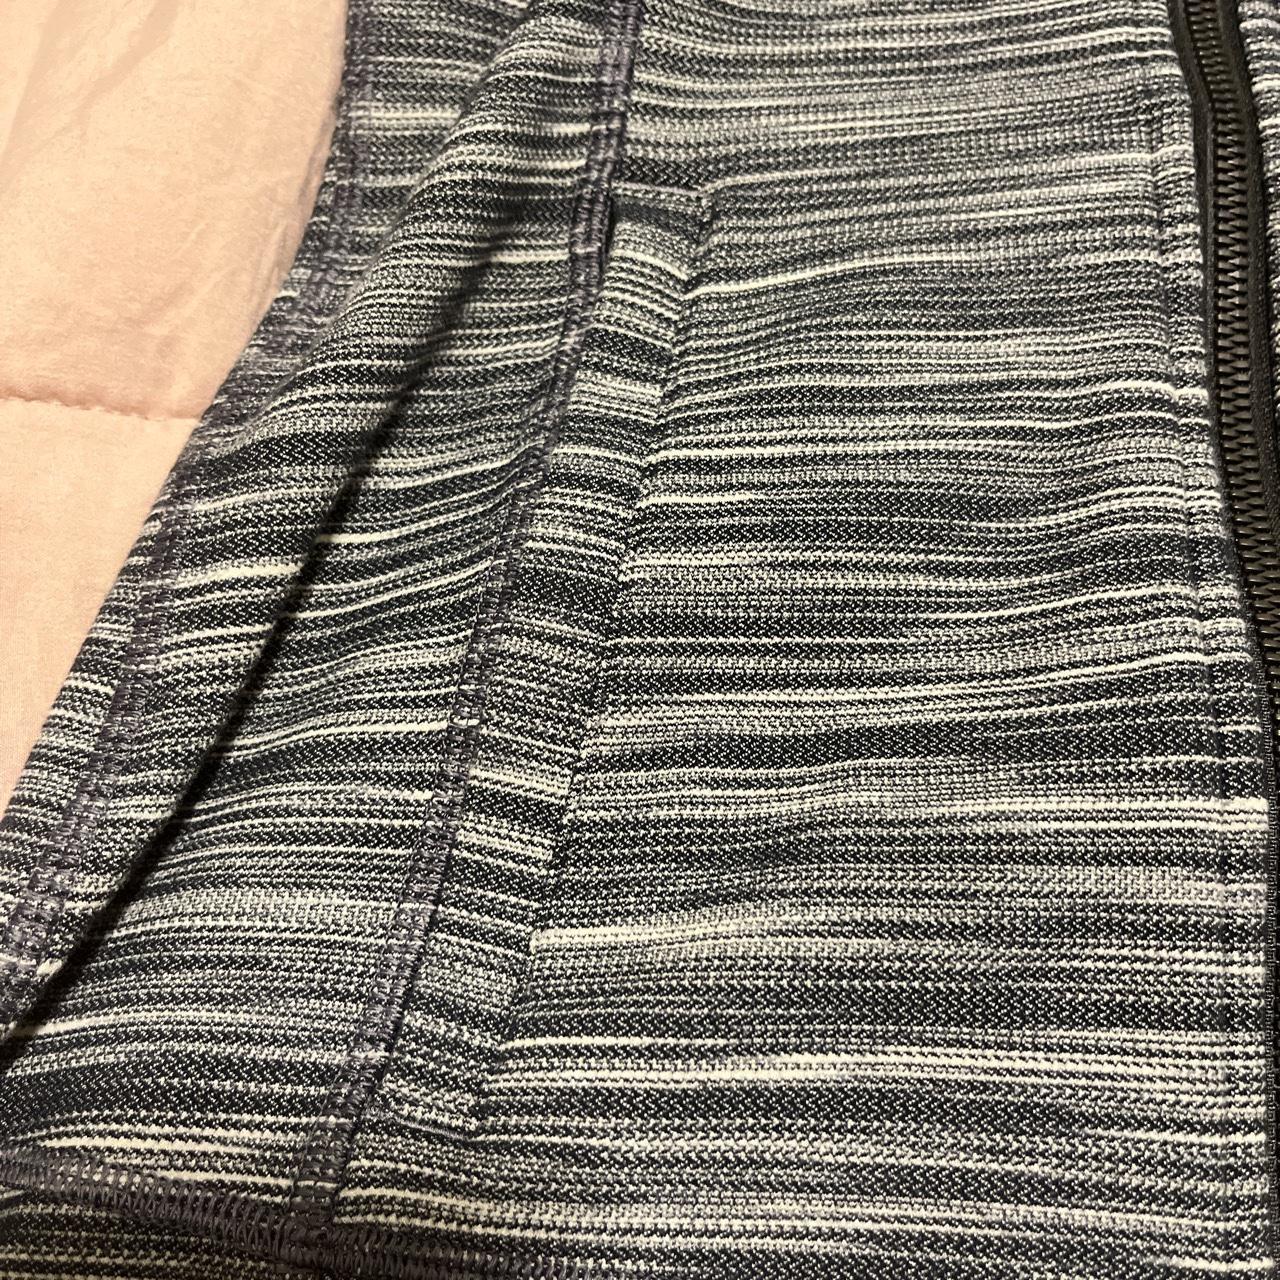 Lululemon Define jacket grey stripes size 6 - Depop